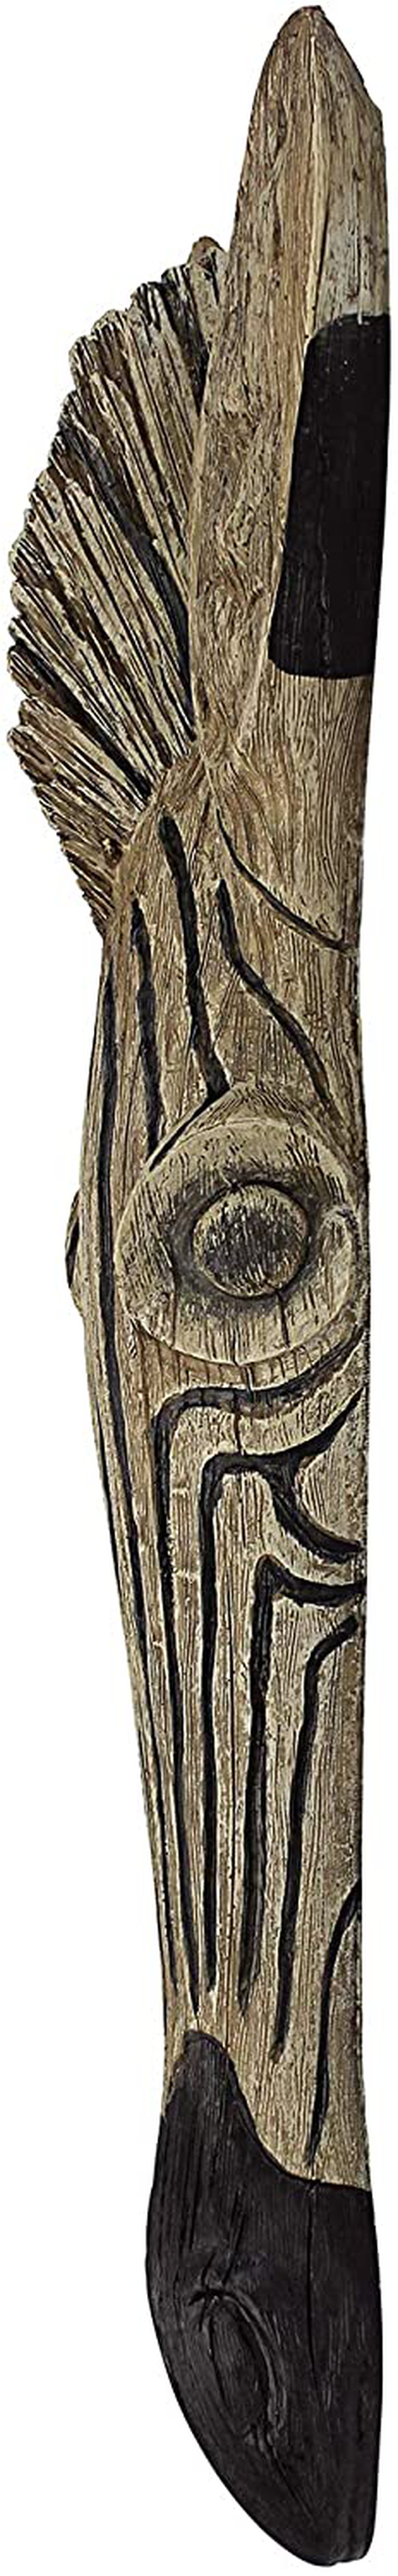 Design Toscano Zebra Animal Mask of the Savannah Wall Decor Sculpture, 16 Inch, Polyresin, Full Color Home & Garden > Decor > Artwork > Sculptures & Statues Design Toscano   